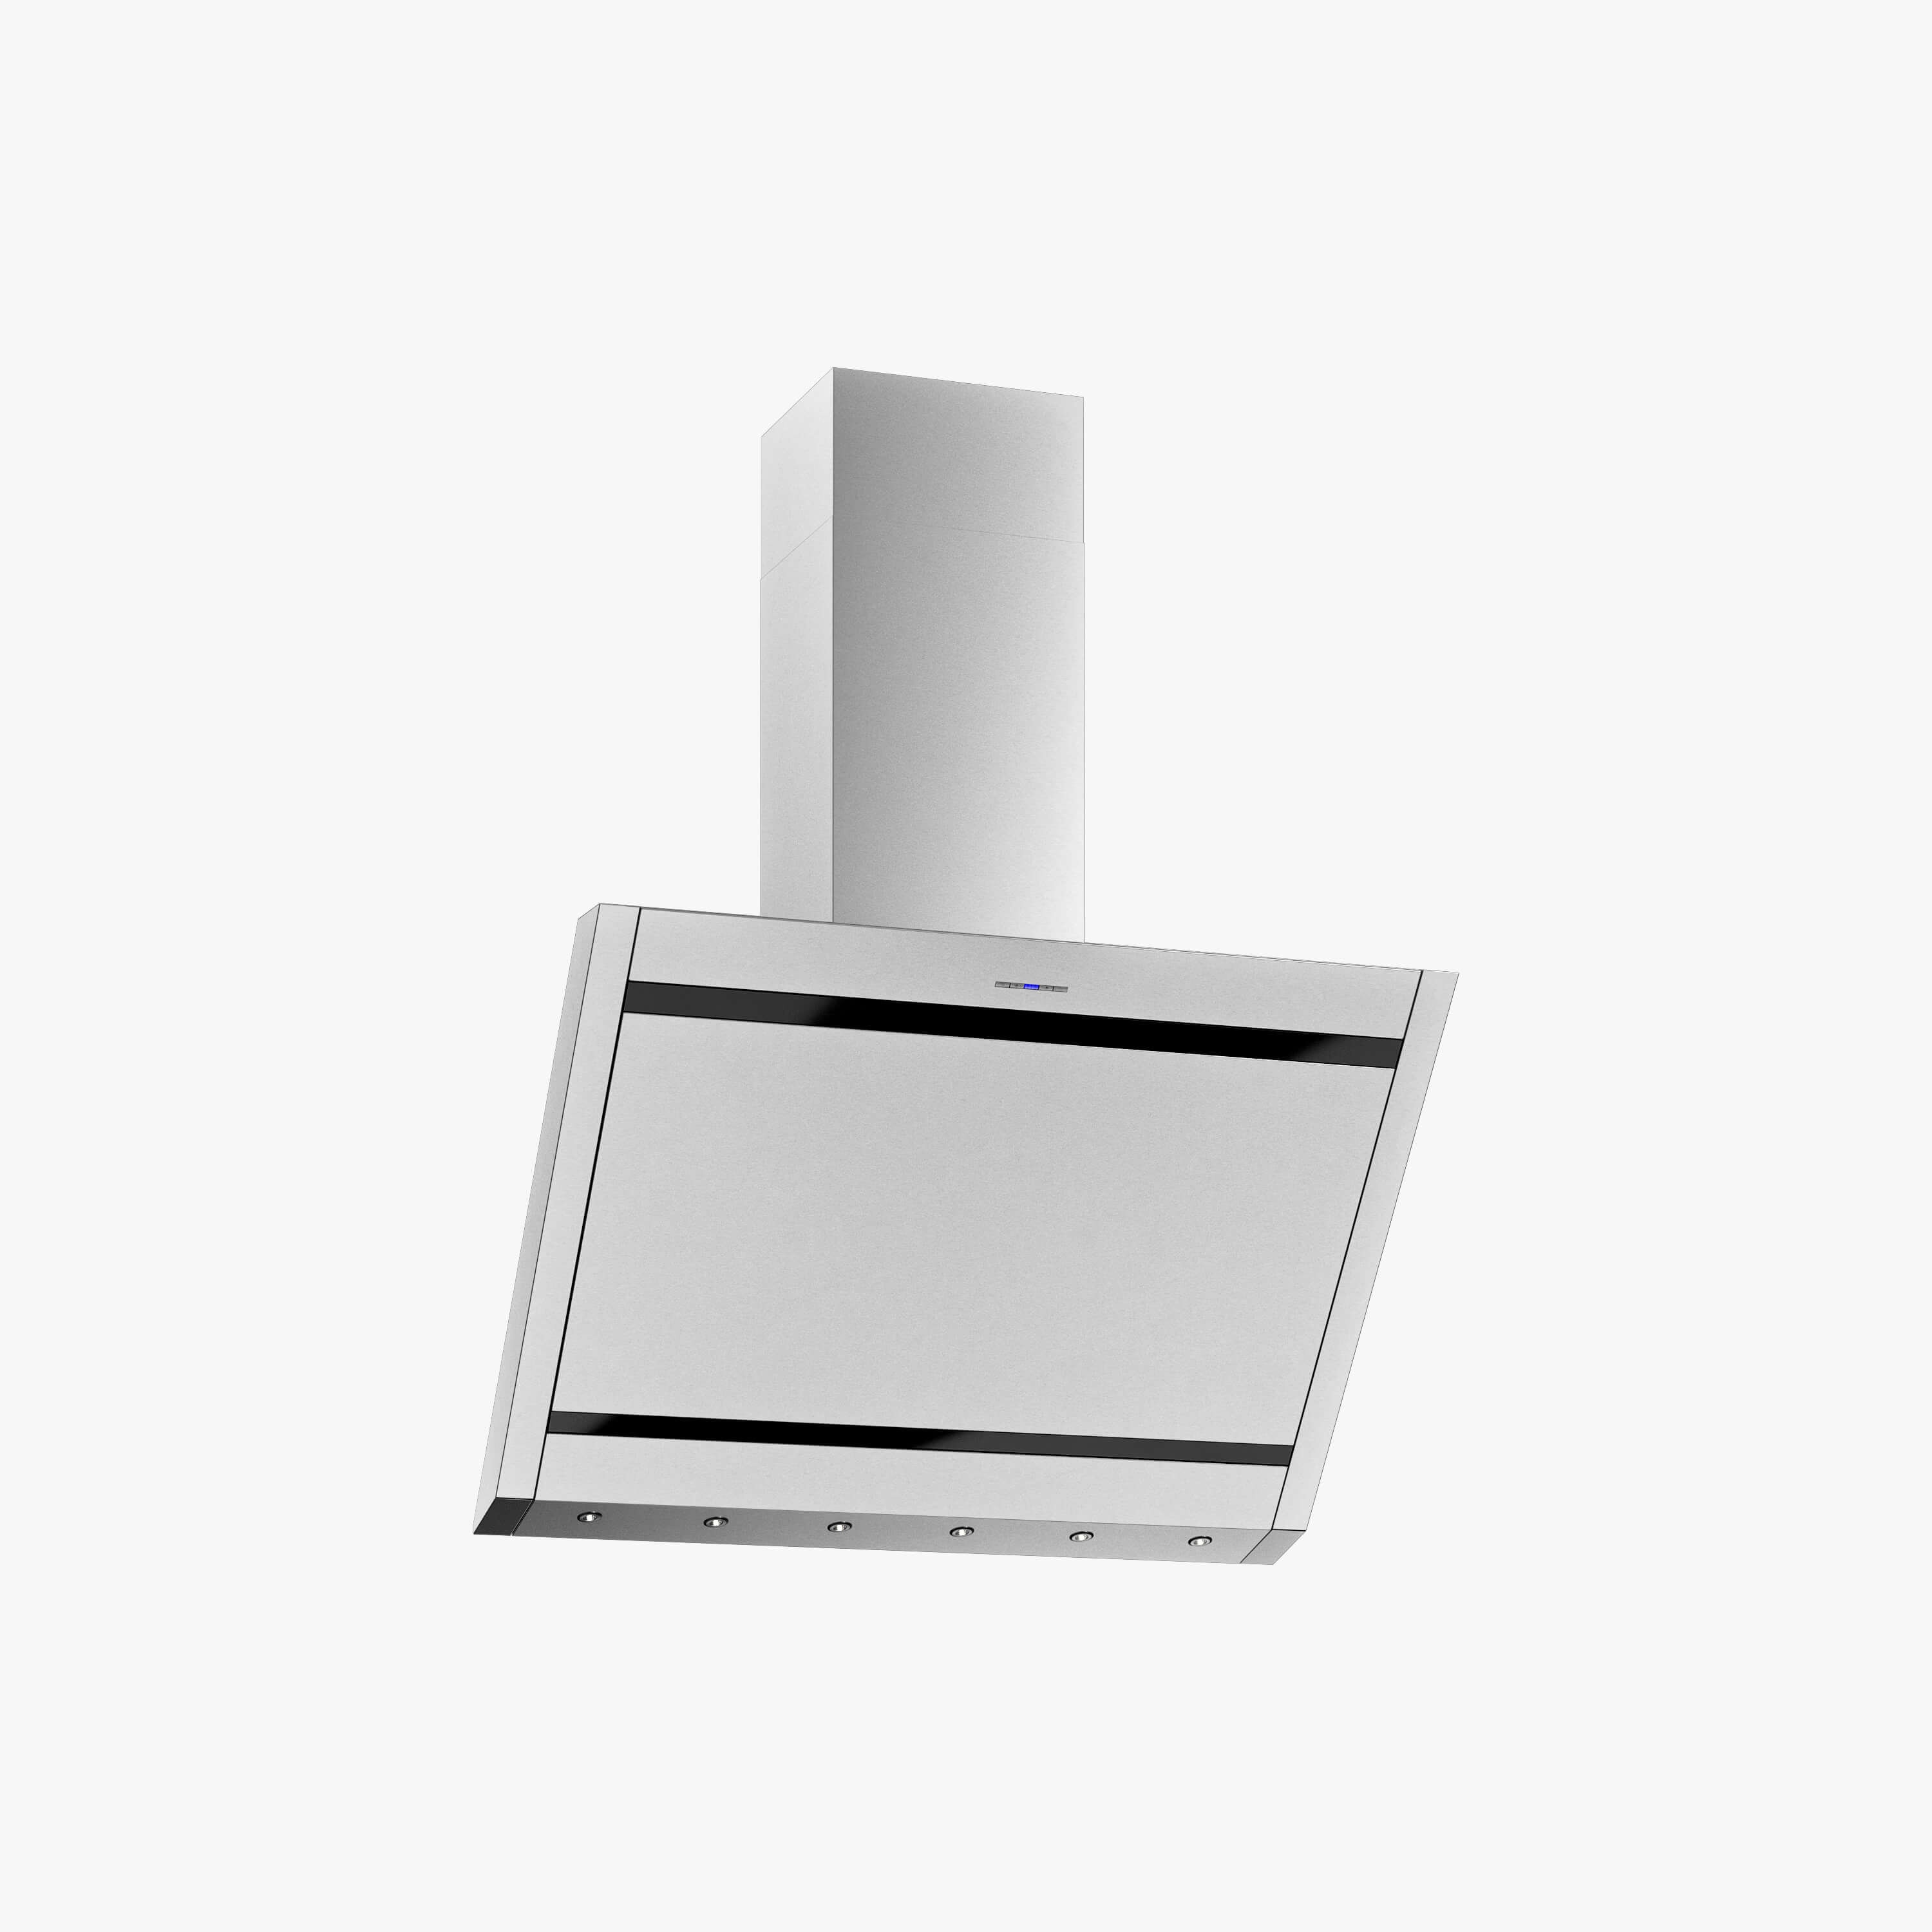 Produktbild på vägghängda köksfläkten Vertikal i rostfritt utförande från Fjäråskupan.